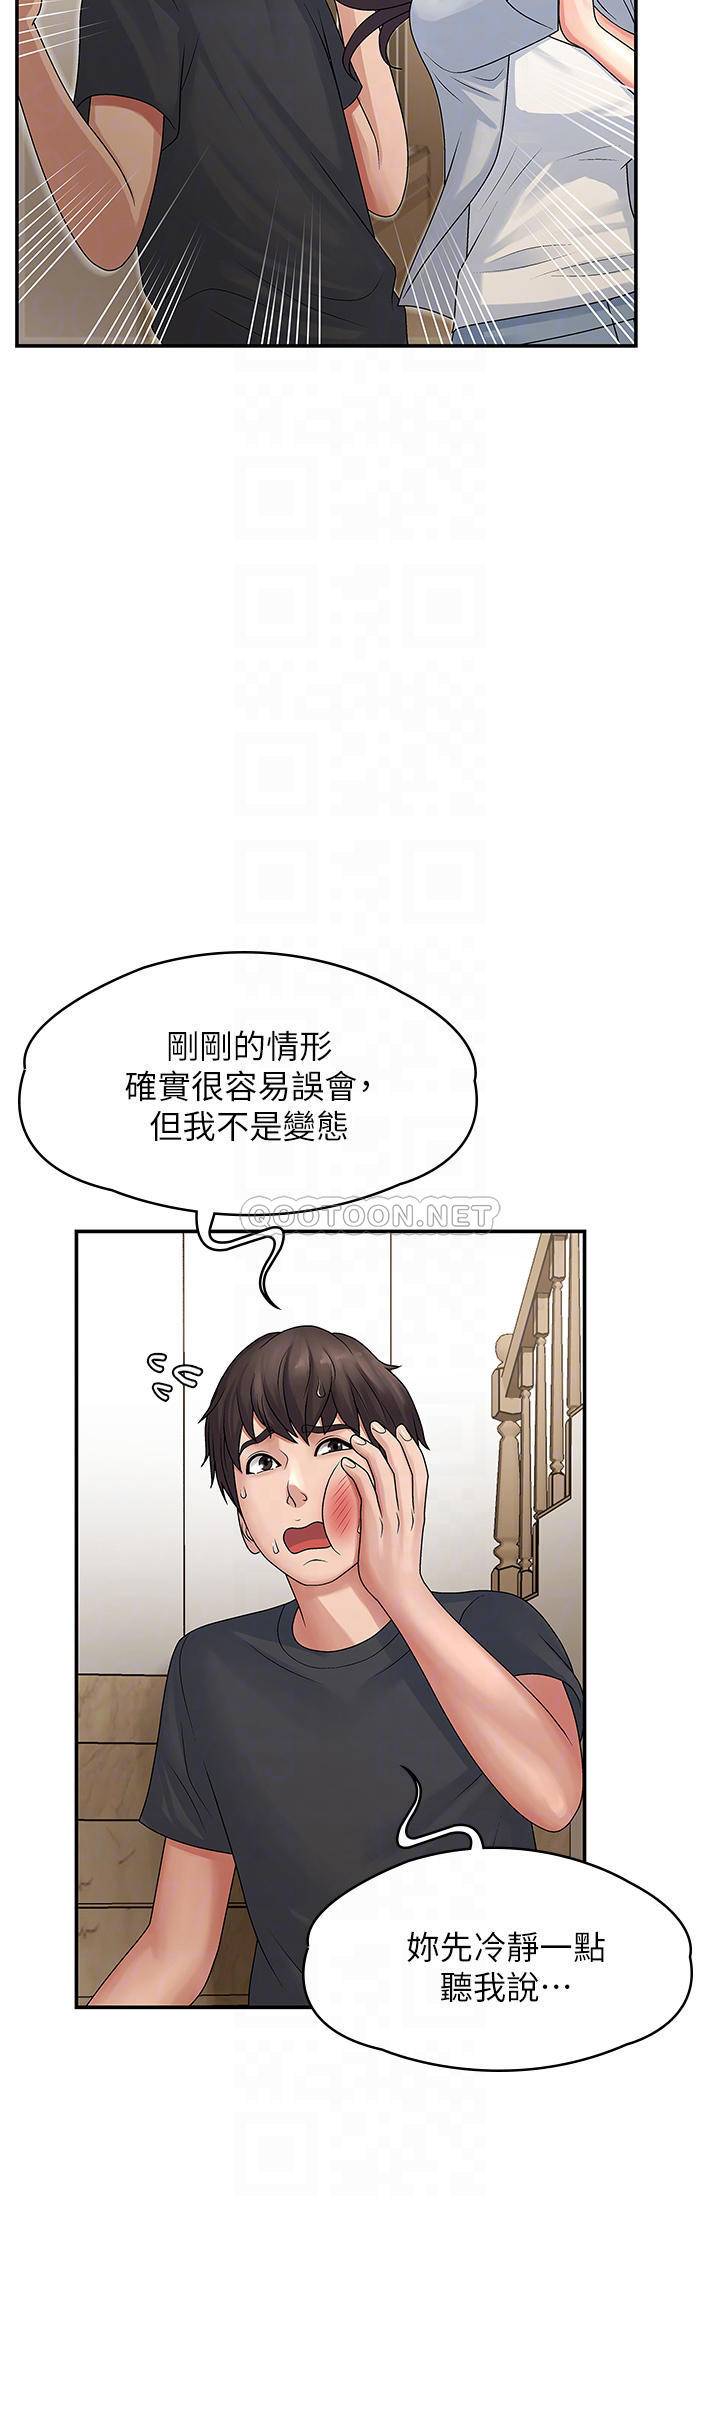 韩国污漫画 青春期小阿姨 第2话 管教放肆的小阿姨 12